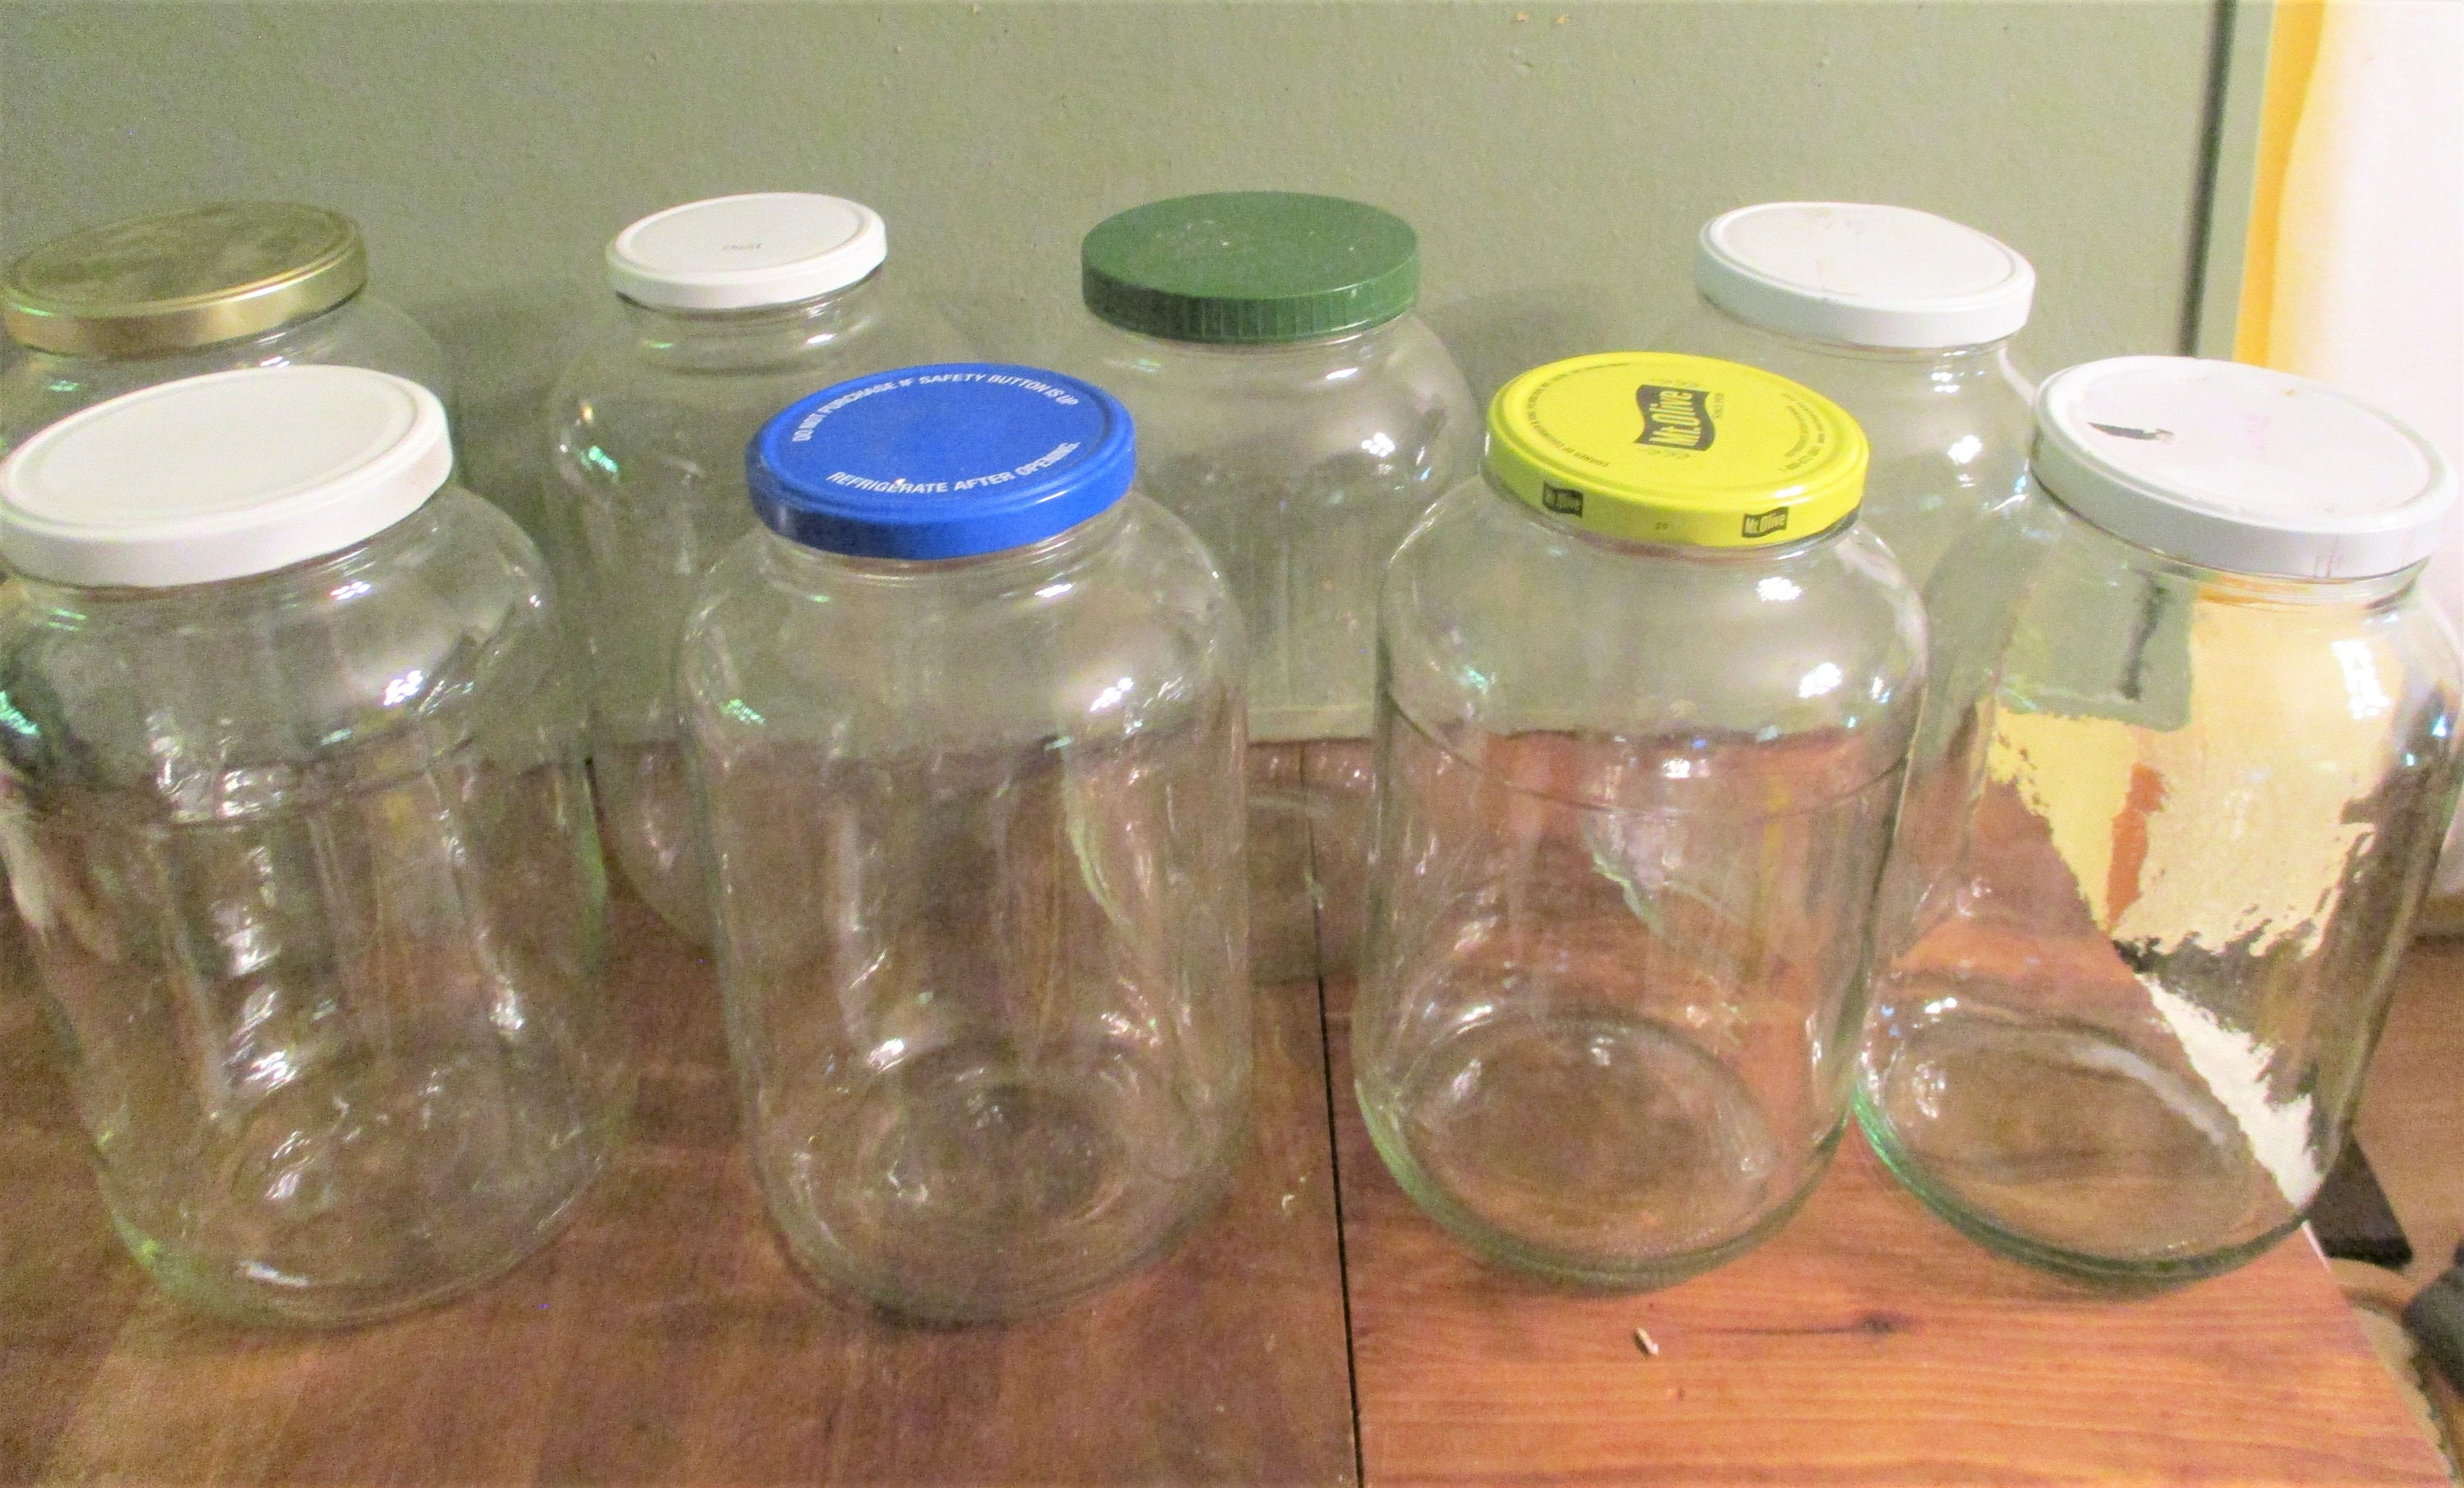 Gallon Glass Pickle Jar, 128oz